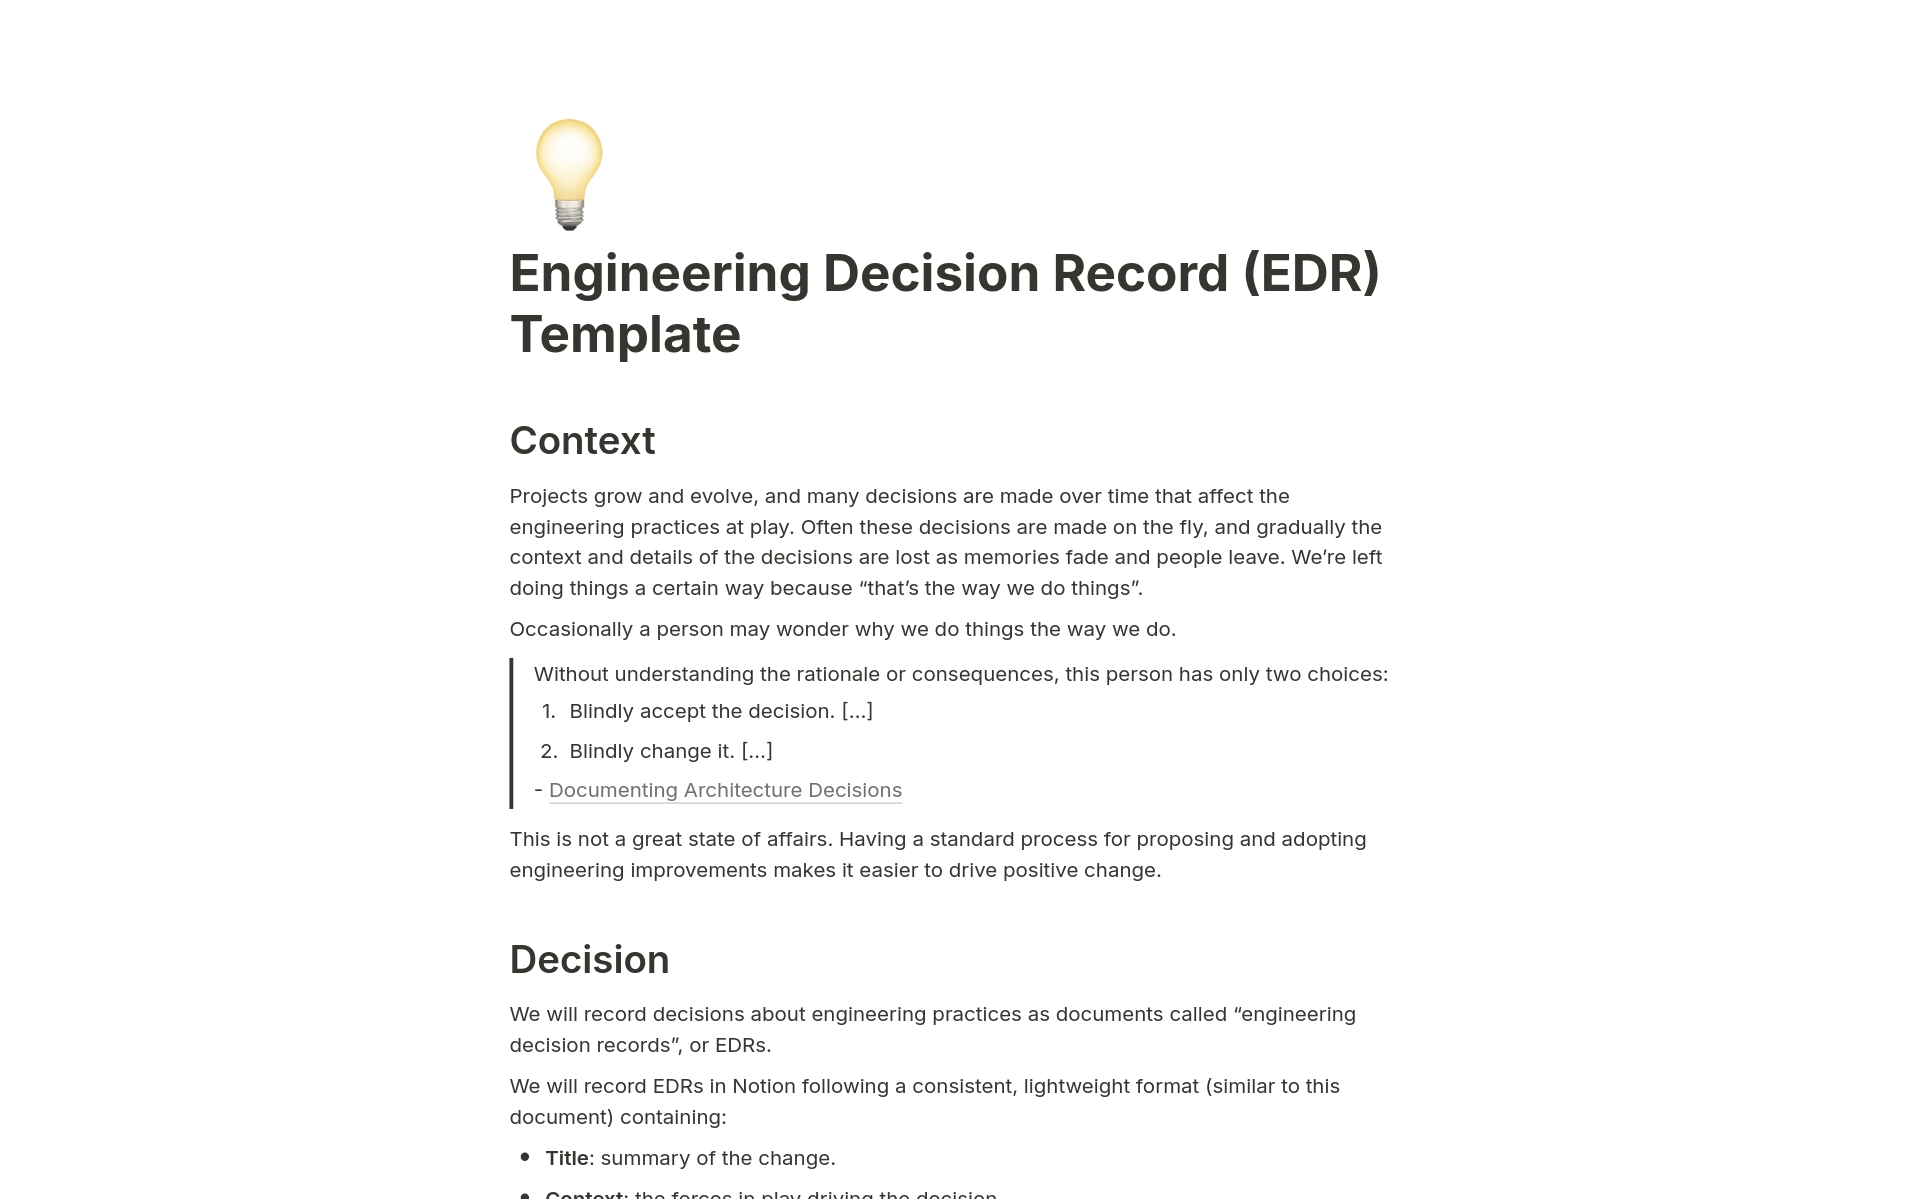 Aperçu du modèle de Engineering Decision Record (EDR)